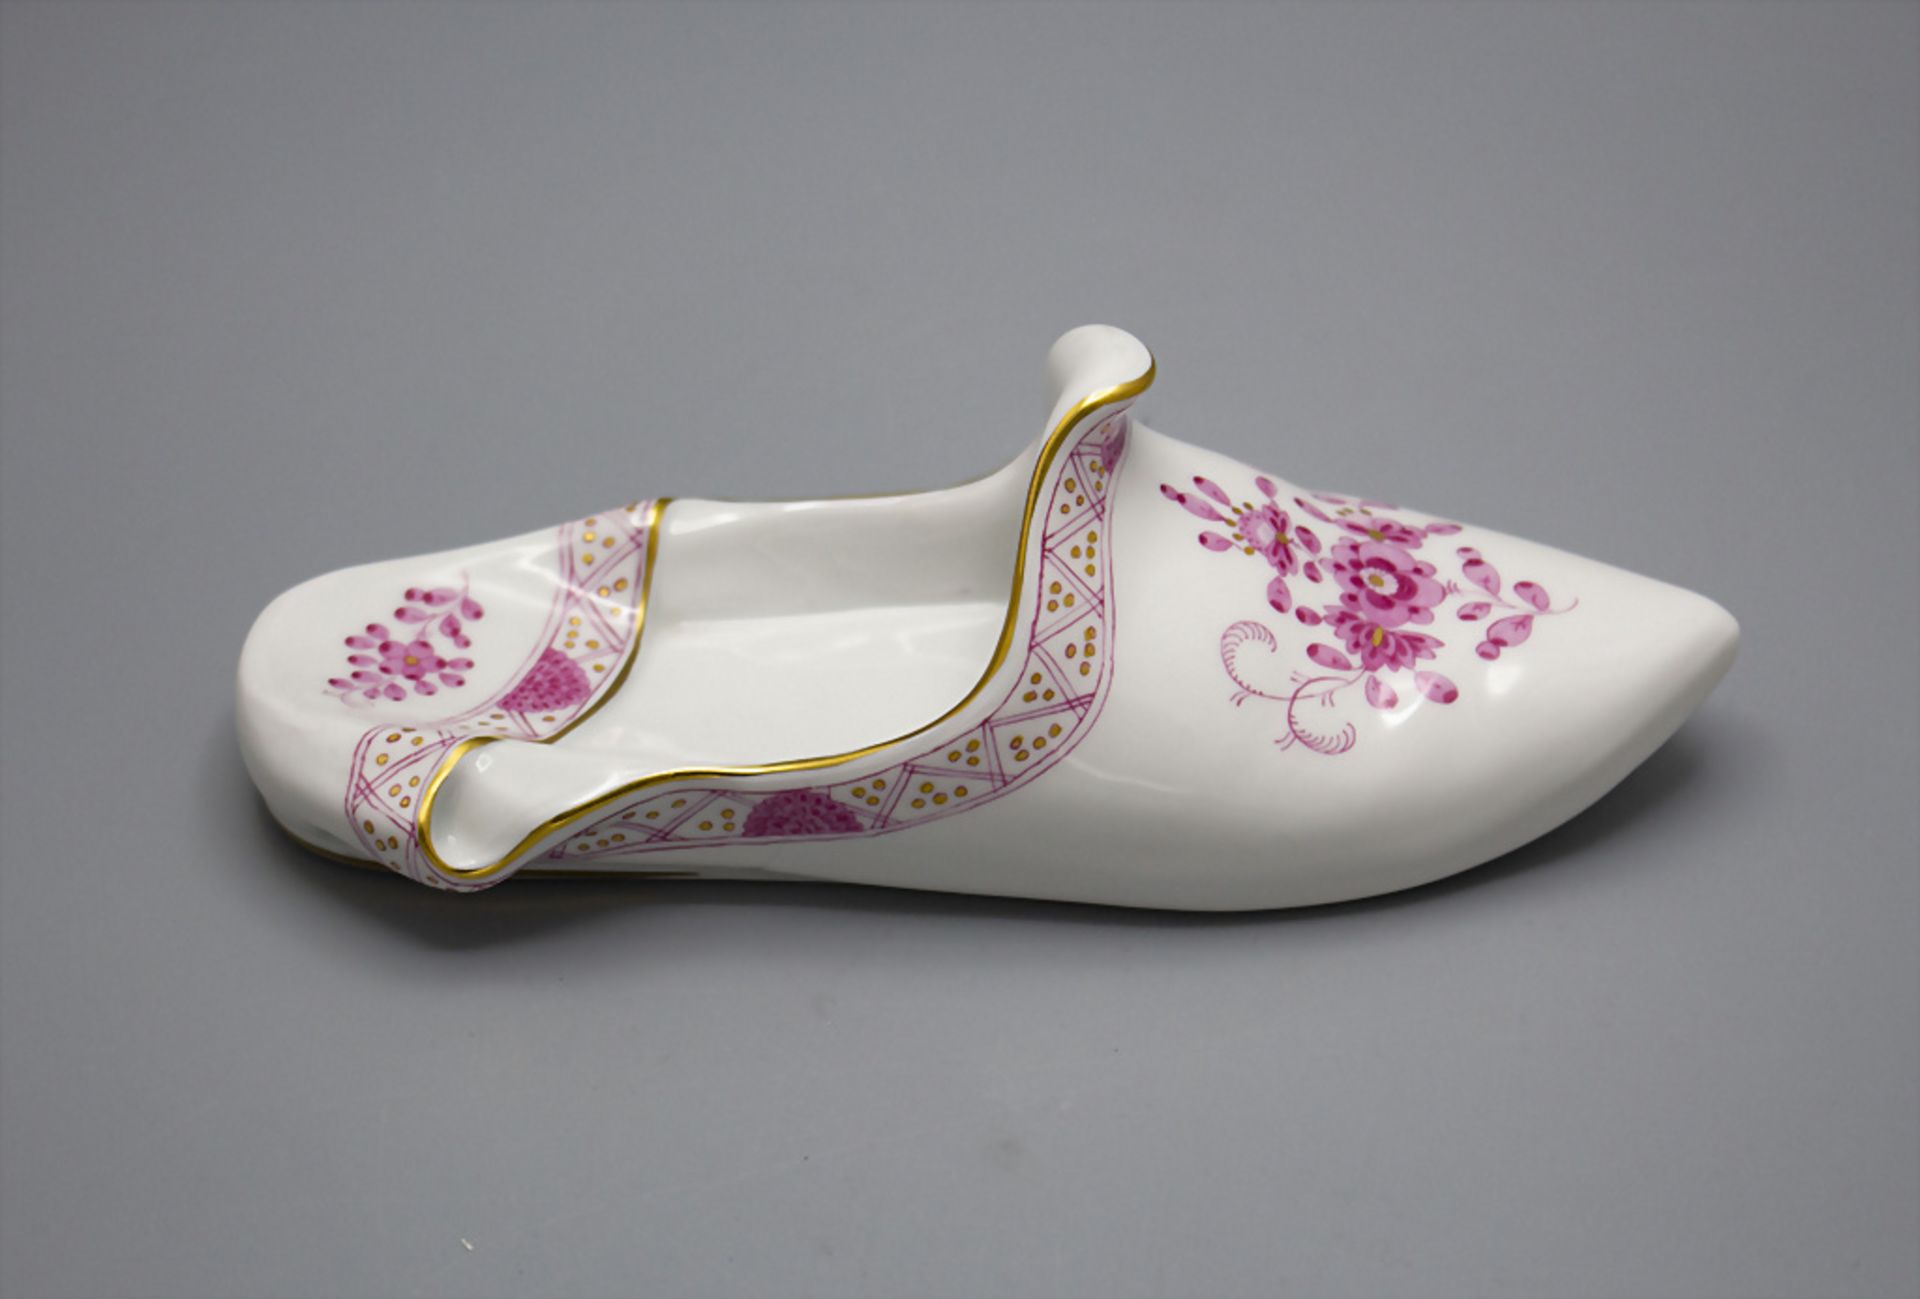 Porzellan Schuh / A porcelain slipper, Meissen, 20. Jh.